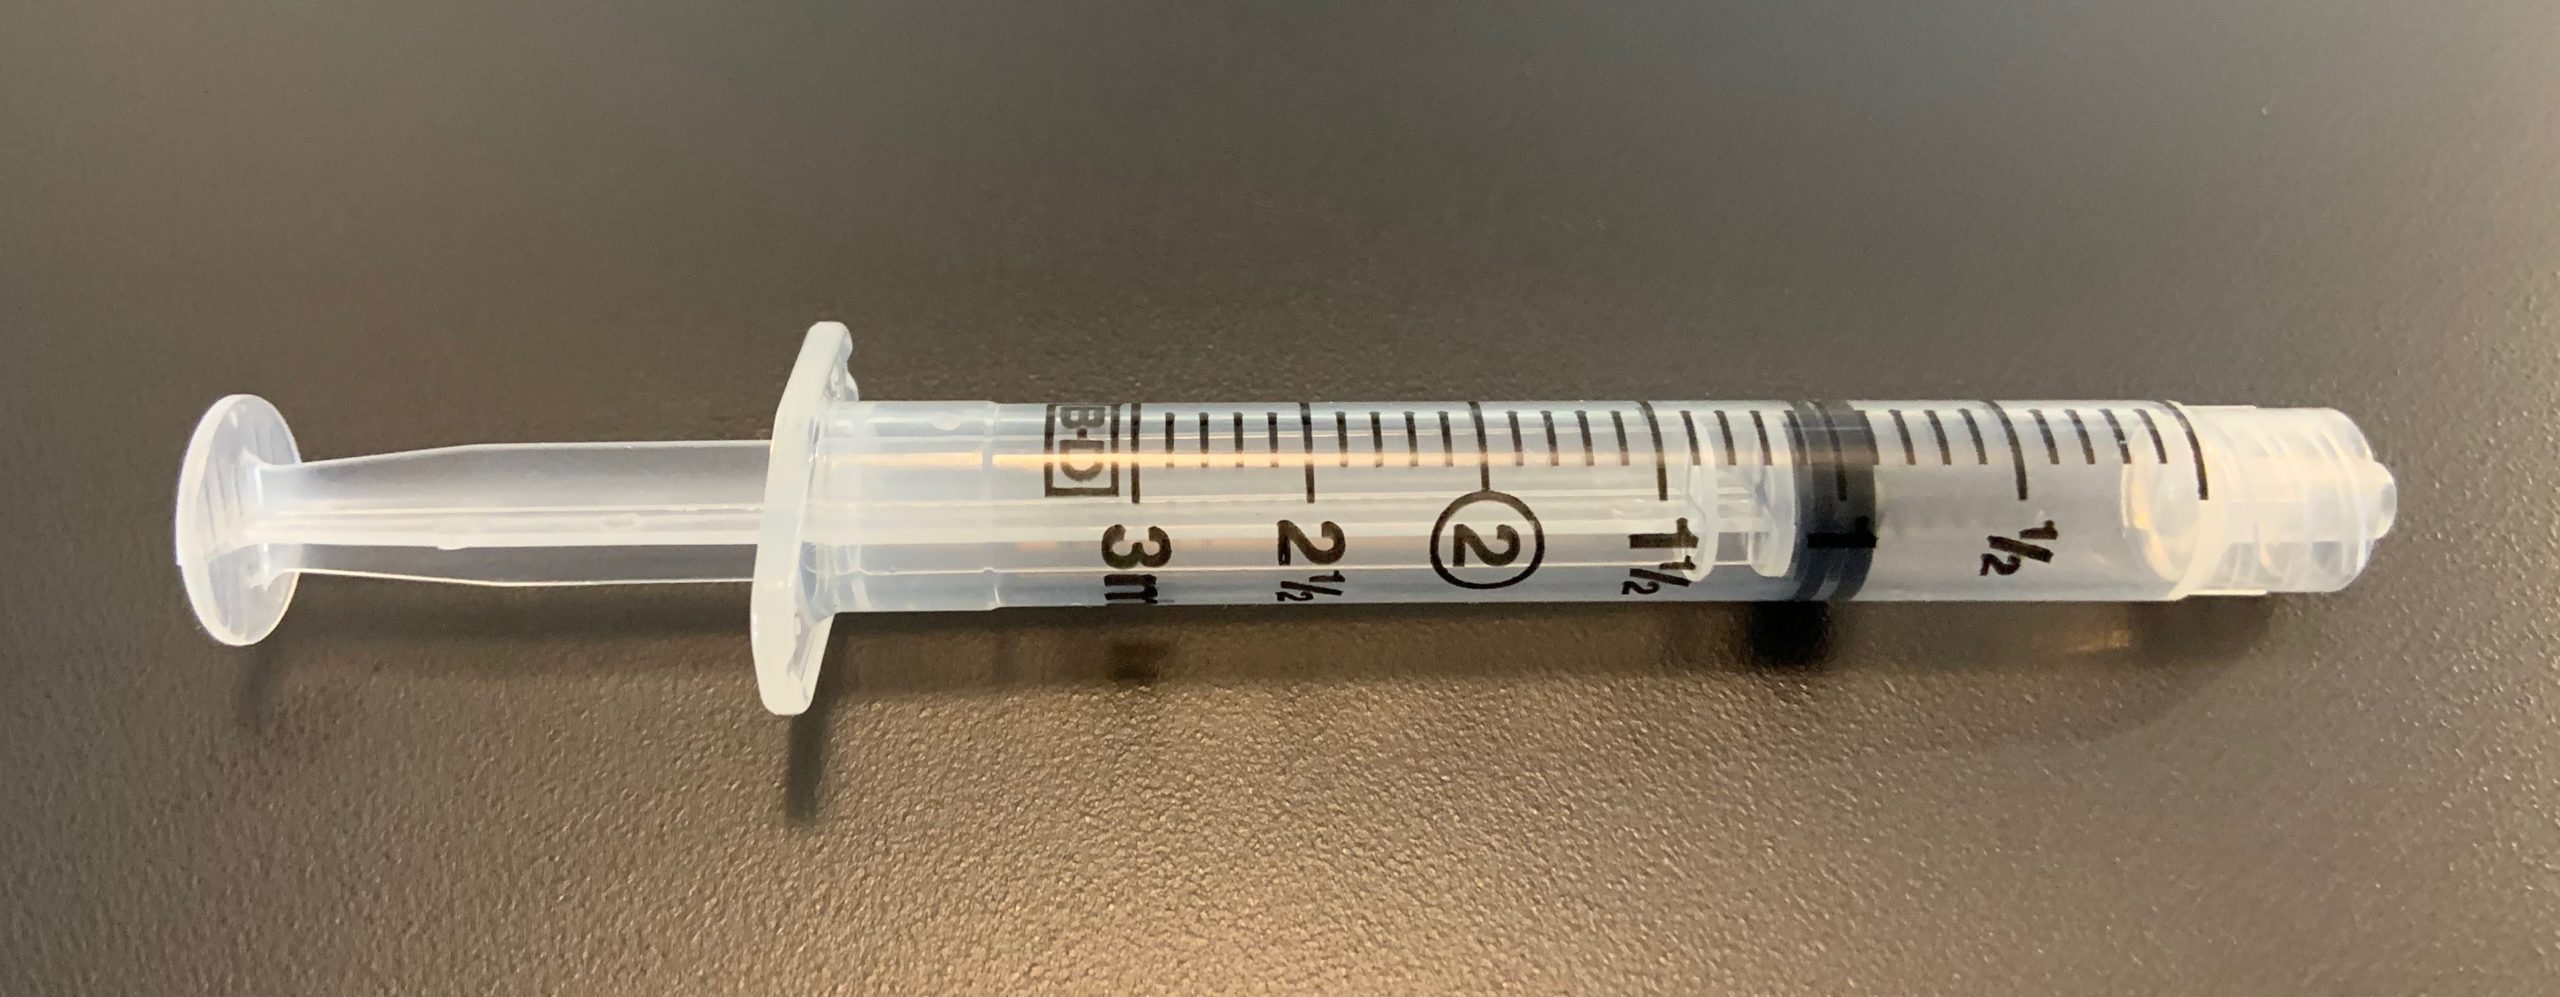 Plastic Syringe 3ml KLM Bio Scientific